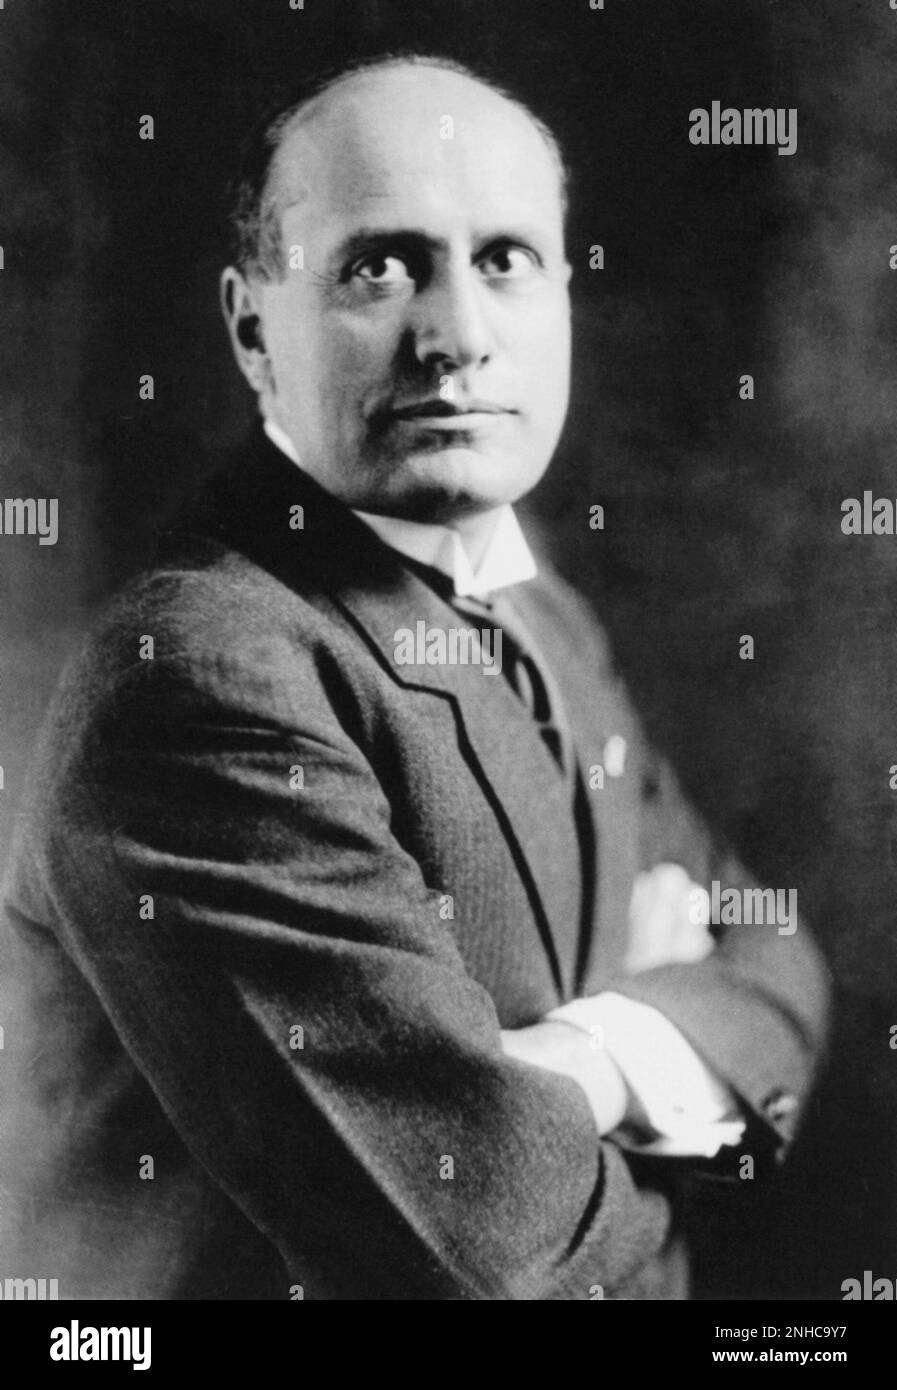 1923 ca, ITALY  : The italian  fascist dictator Duce BENITO MUSSOLINI ( 1883 - 1945 )  - Seconda Guerra Mondiale - WWII - World War II - FASCISMO - FASCISTA - FASCIO - smile - sorriso - tie - cravatta - collar - colletto  ----  Archivio GBB Stock Photo